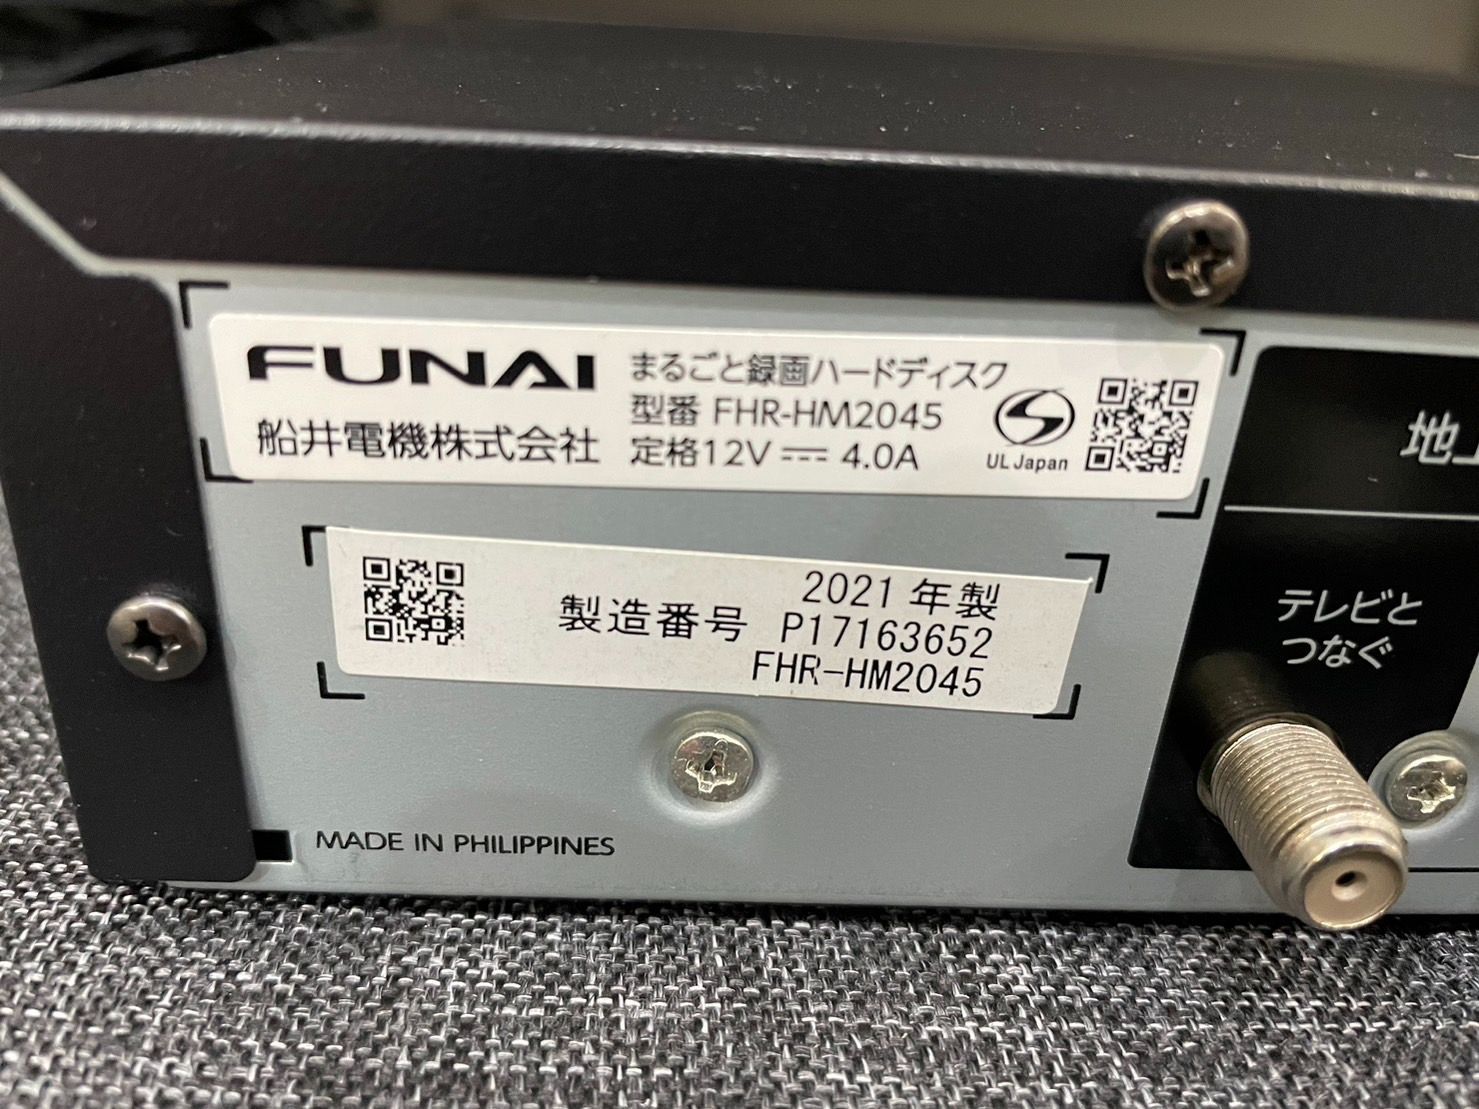 FUNAI FHR-HM2045 まるごと録画ハードディスク - ブルーレイレコーダー